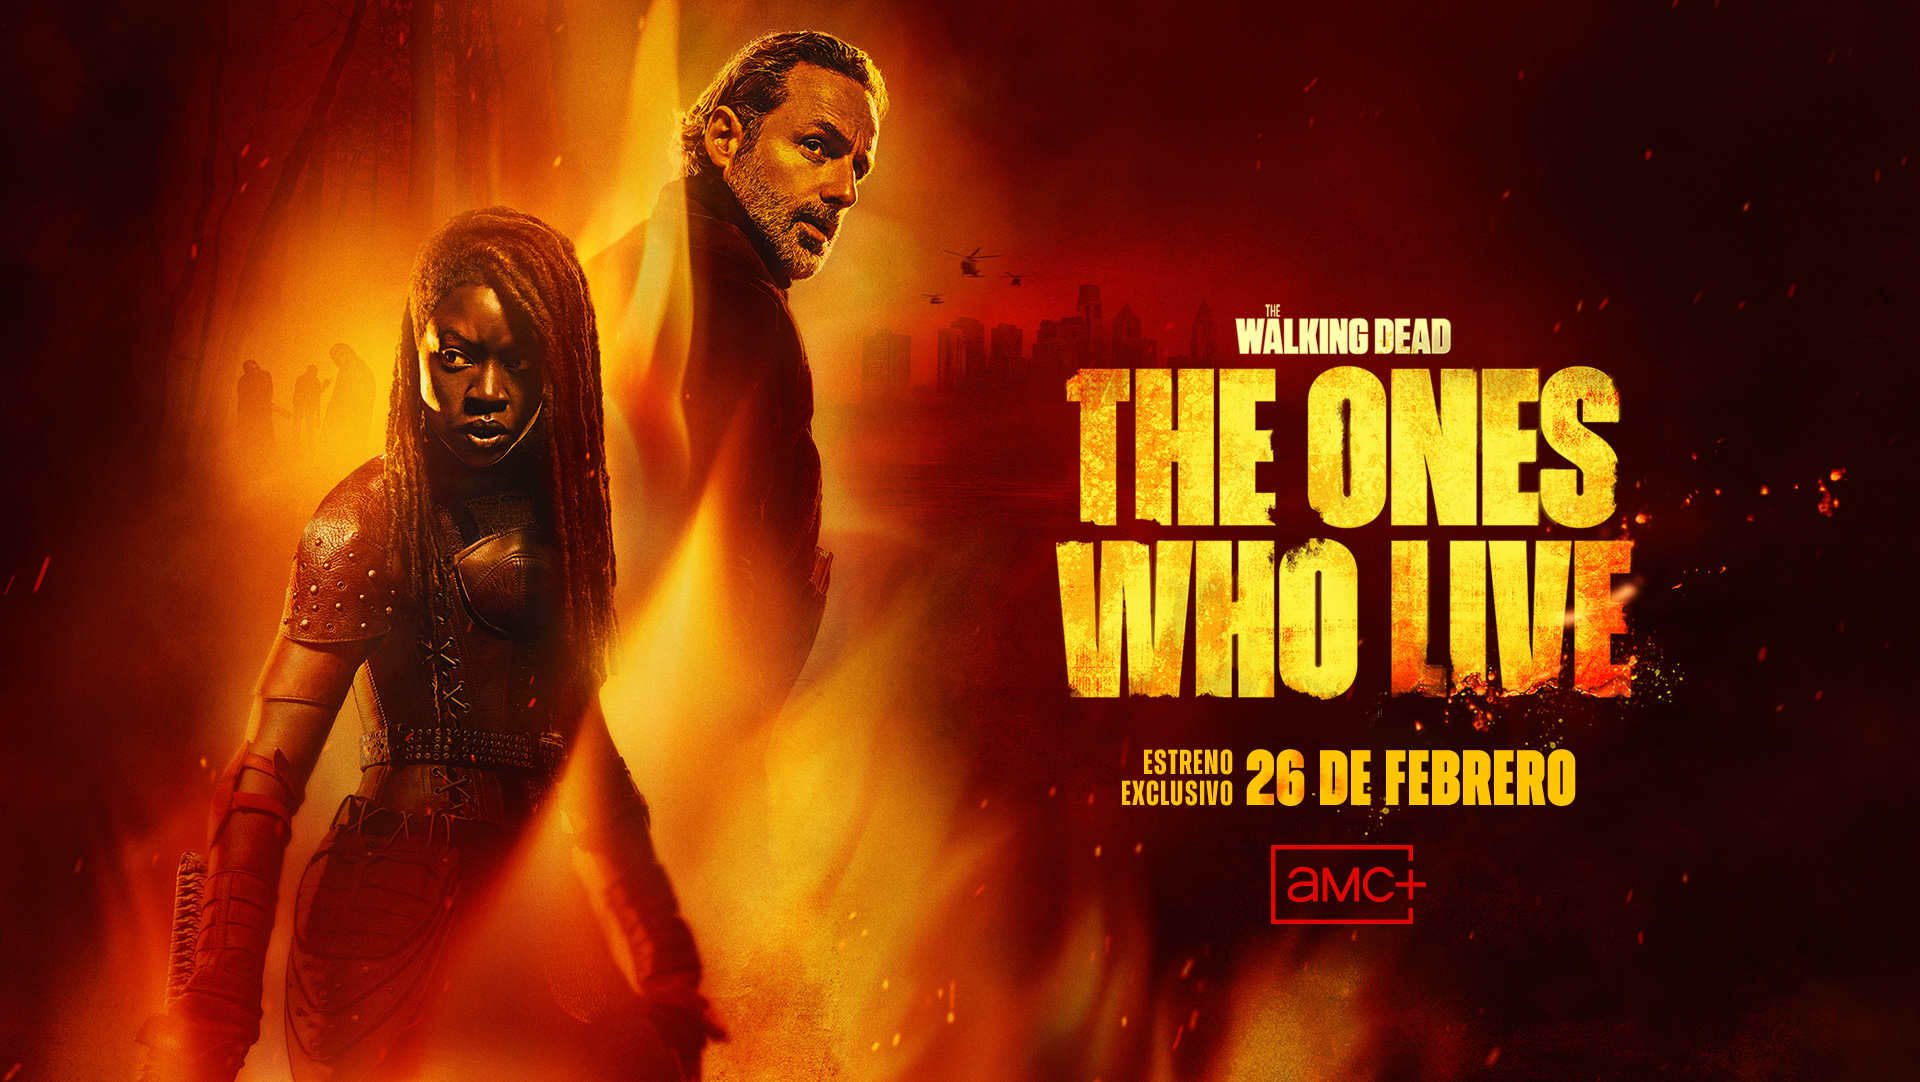 AMC+ lanza el póster oficial y un nuevo tráiler de su serie original ‘The Walking Dead: The Ones Who Live’